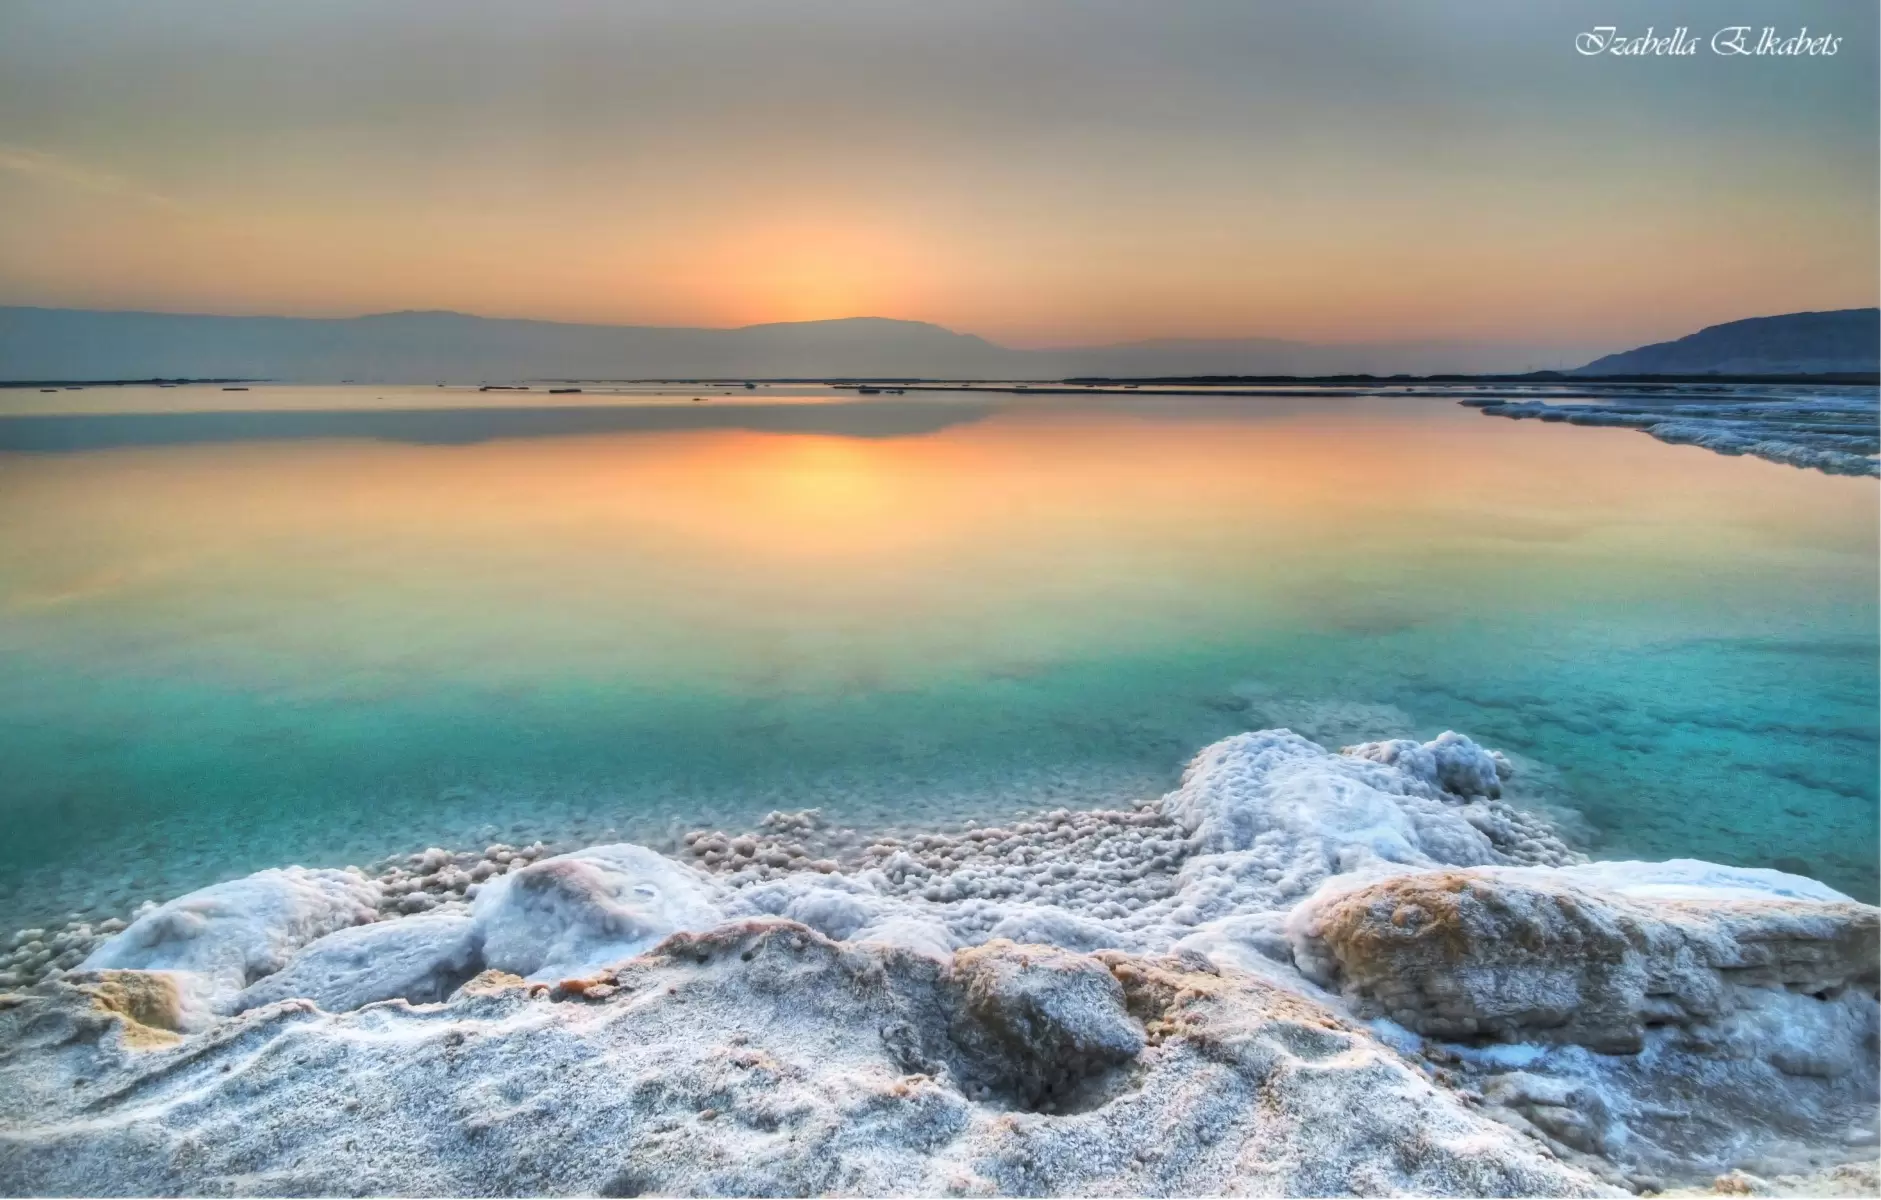 זריחה בים המלח - איזבלה אלקבץ - נופים יפים תמונות בחלקים  - מק''ט: 282620